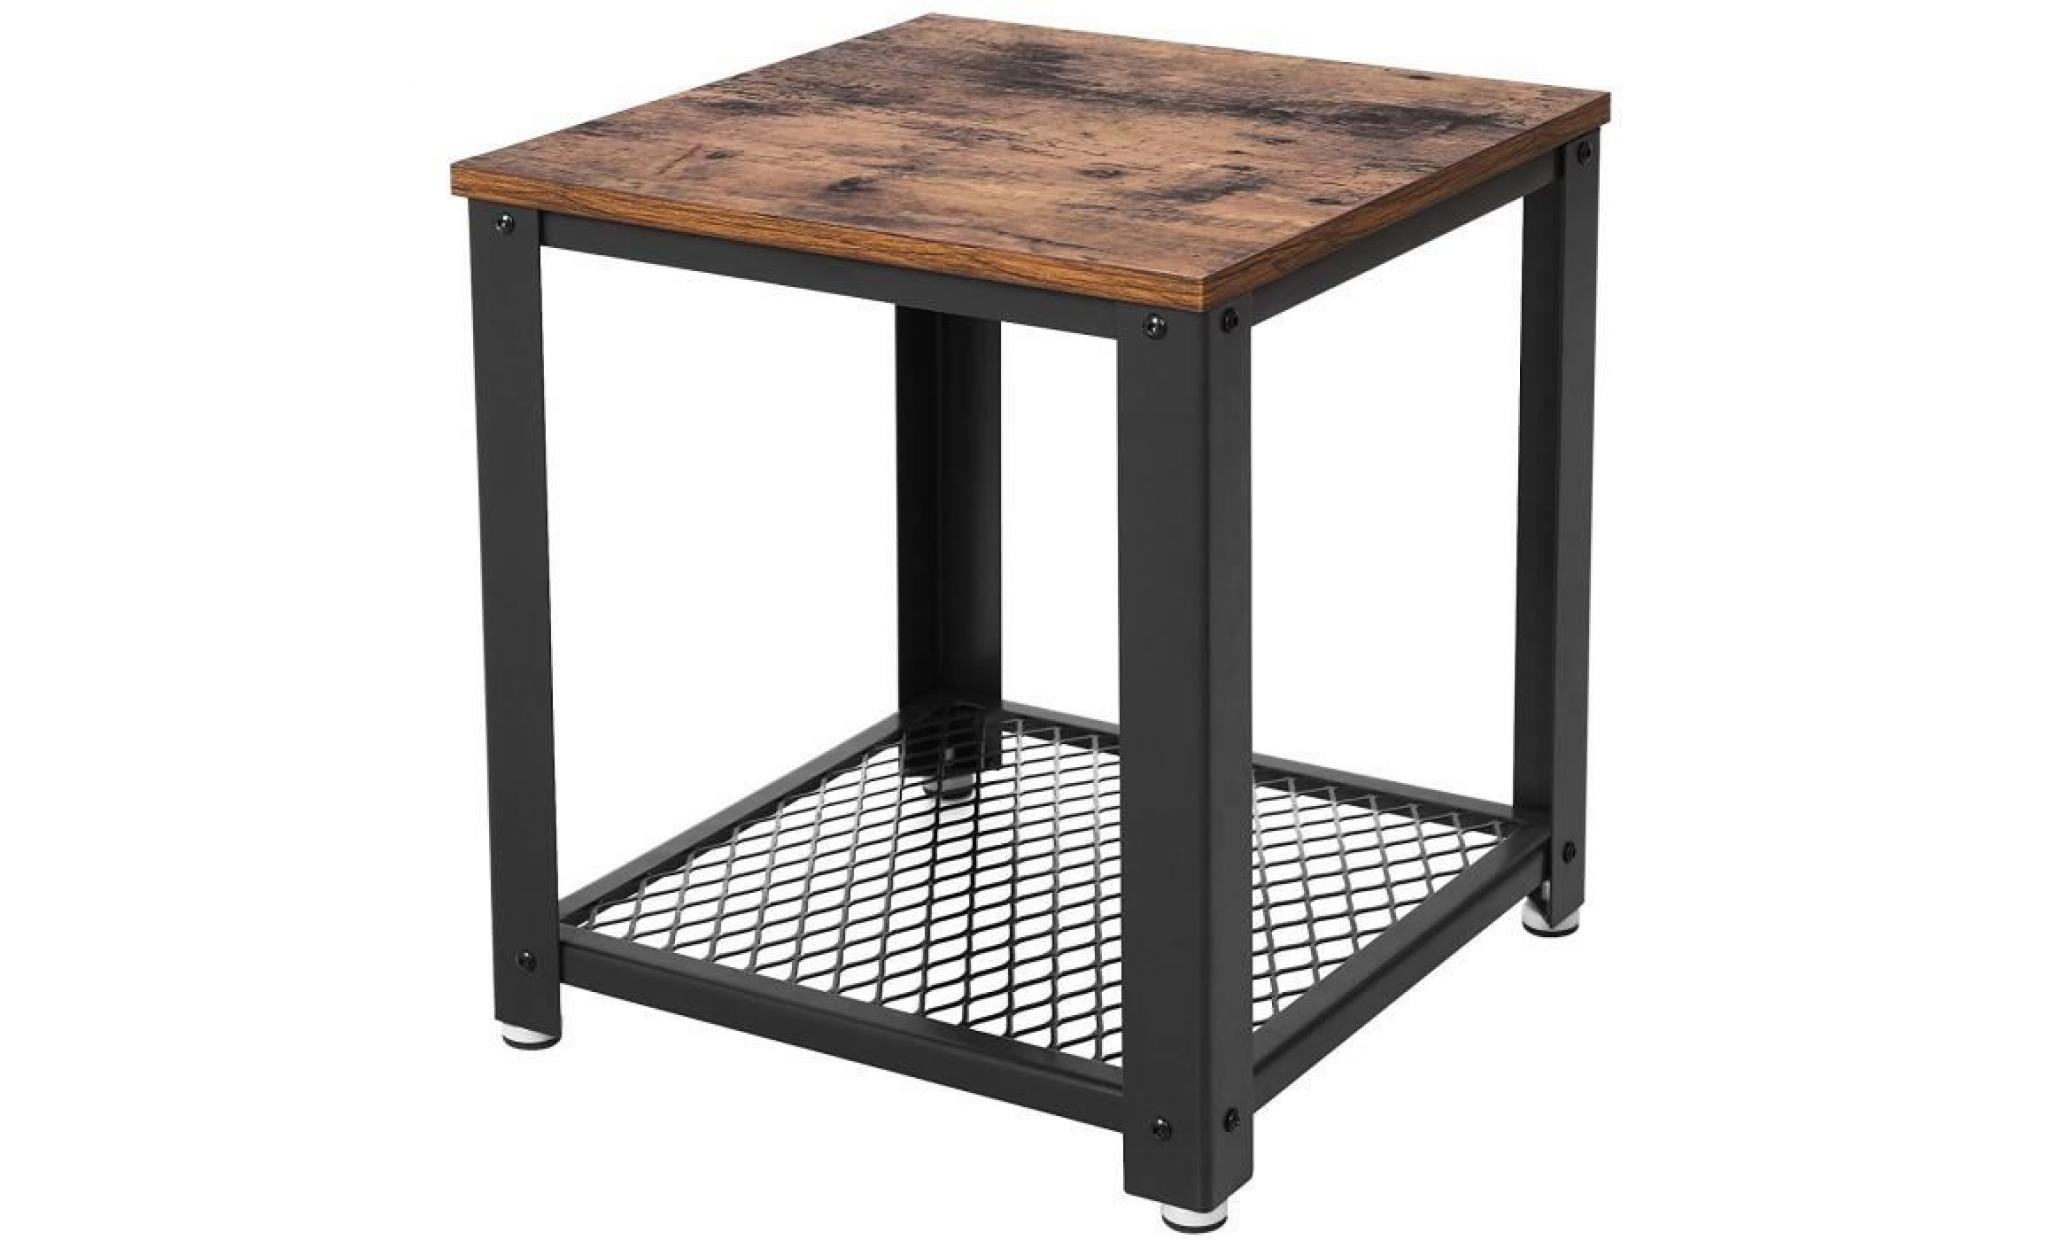 songmics table de chevet style industriel armature en métal look vintage aspect usagé table rétro table de nuit let41x